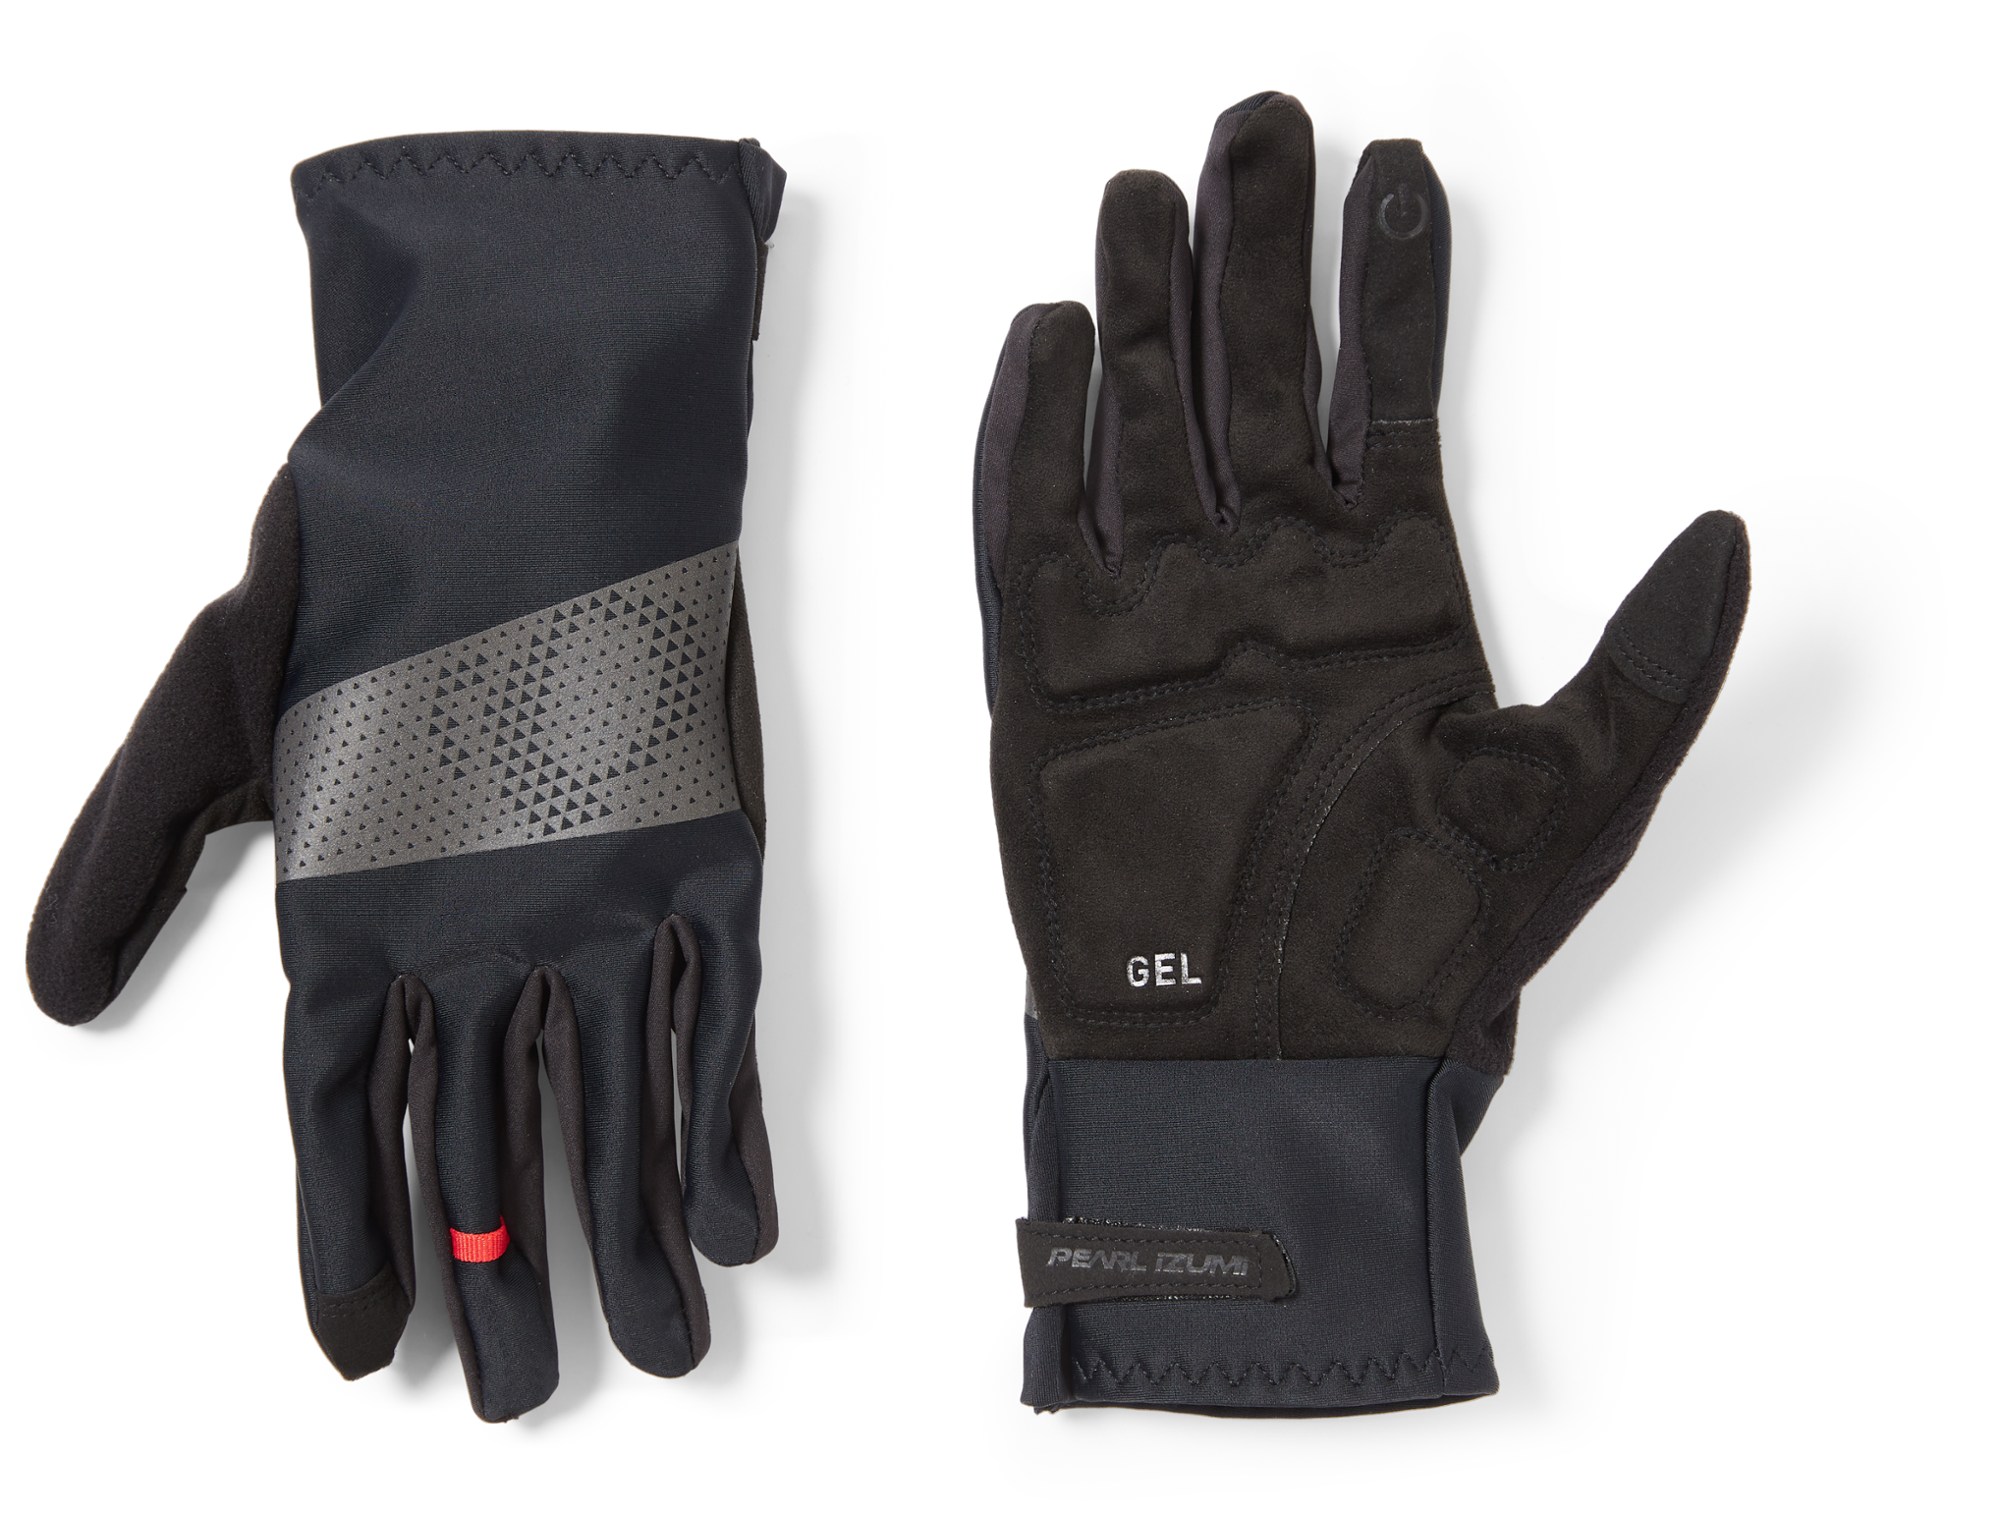 Велосипедные перчатки Cyclone Gel - мужские PEARL iZUMi, черный перчатки спортивные pearl izumi черные голубые 10 xl